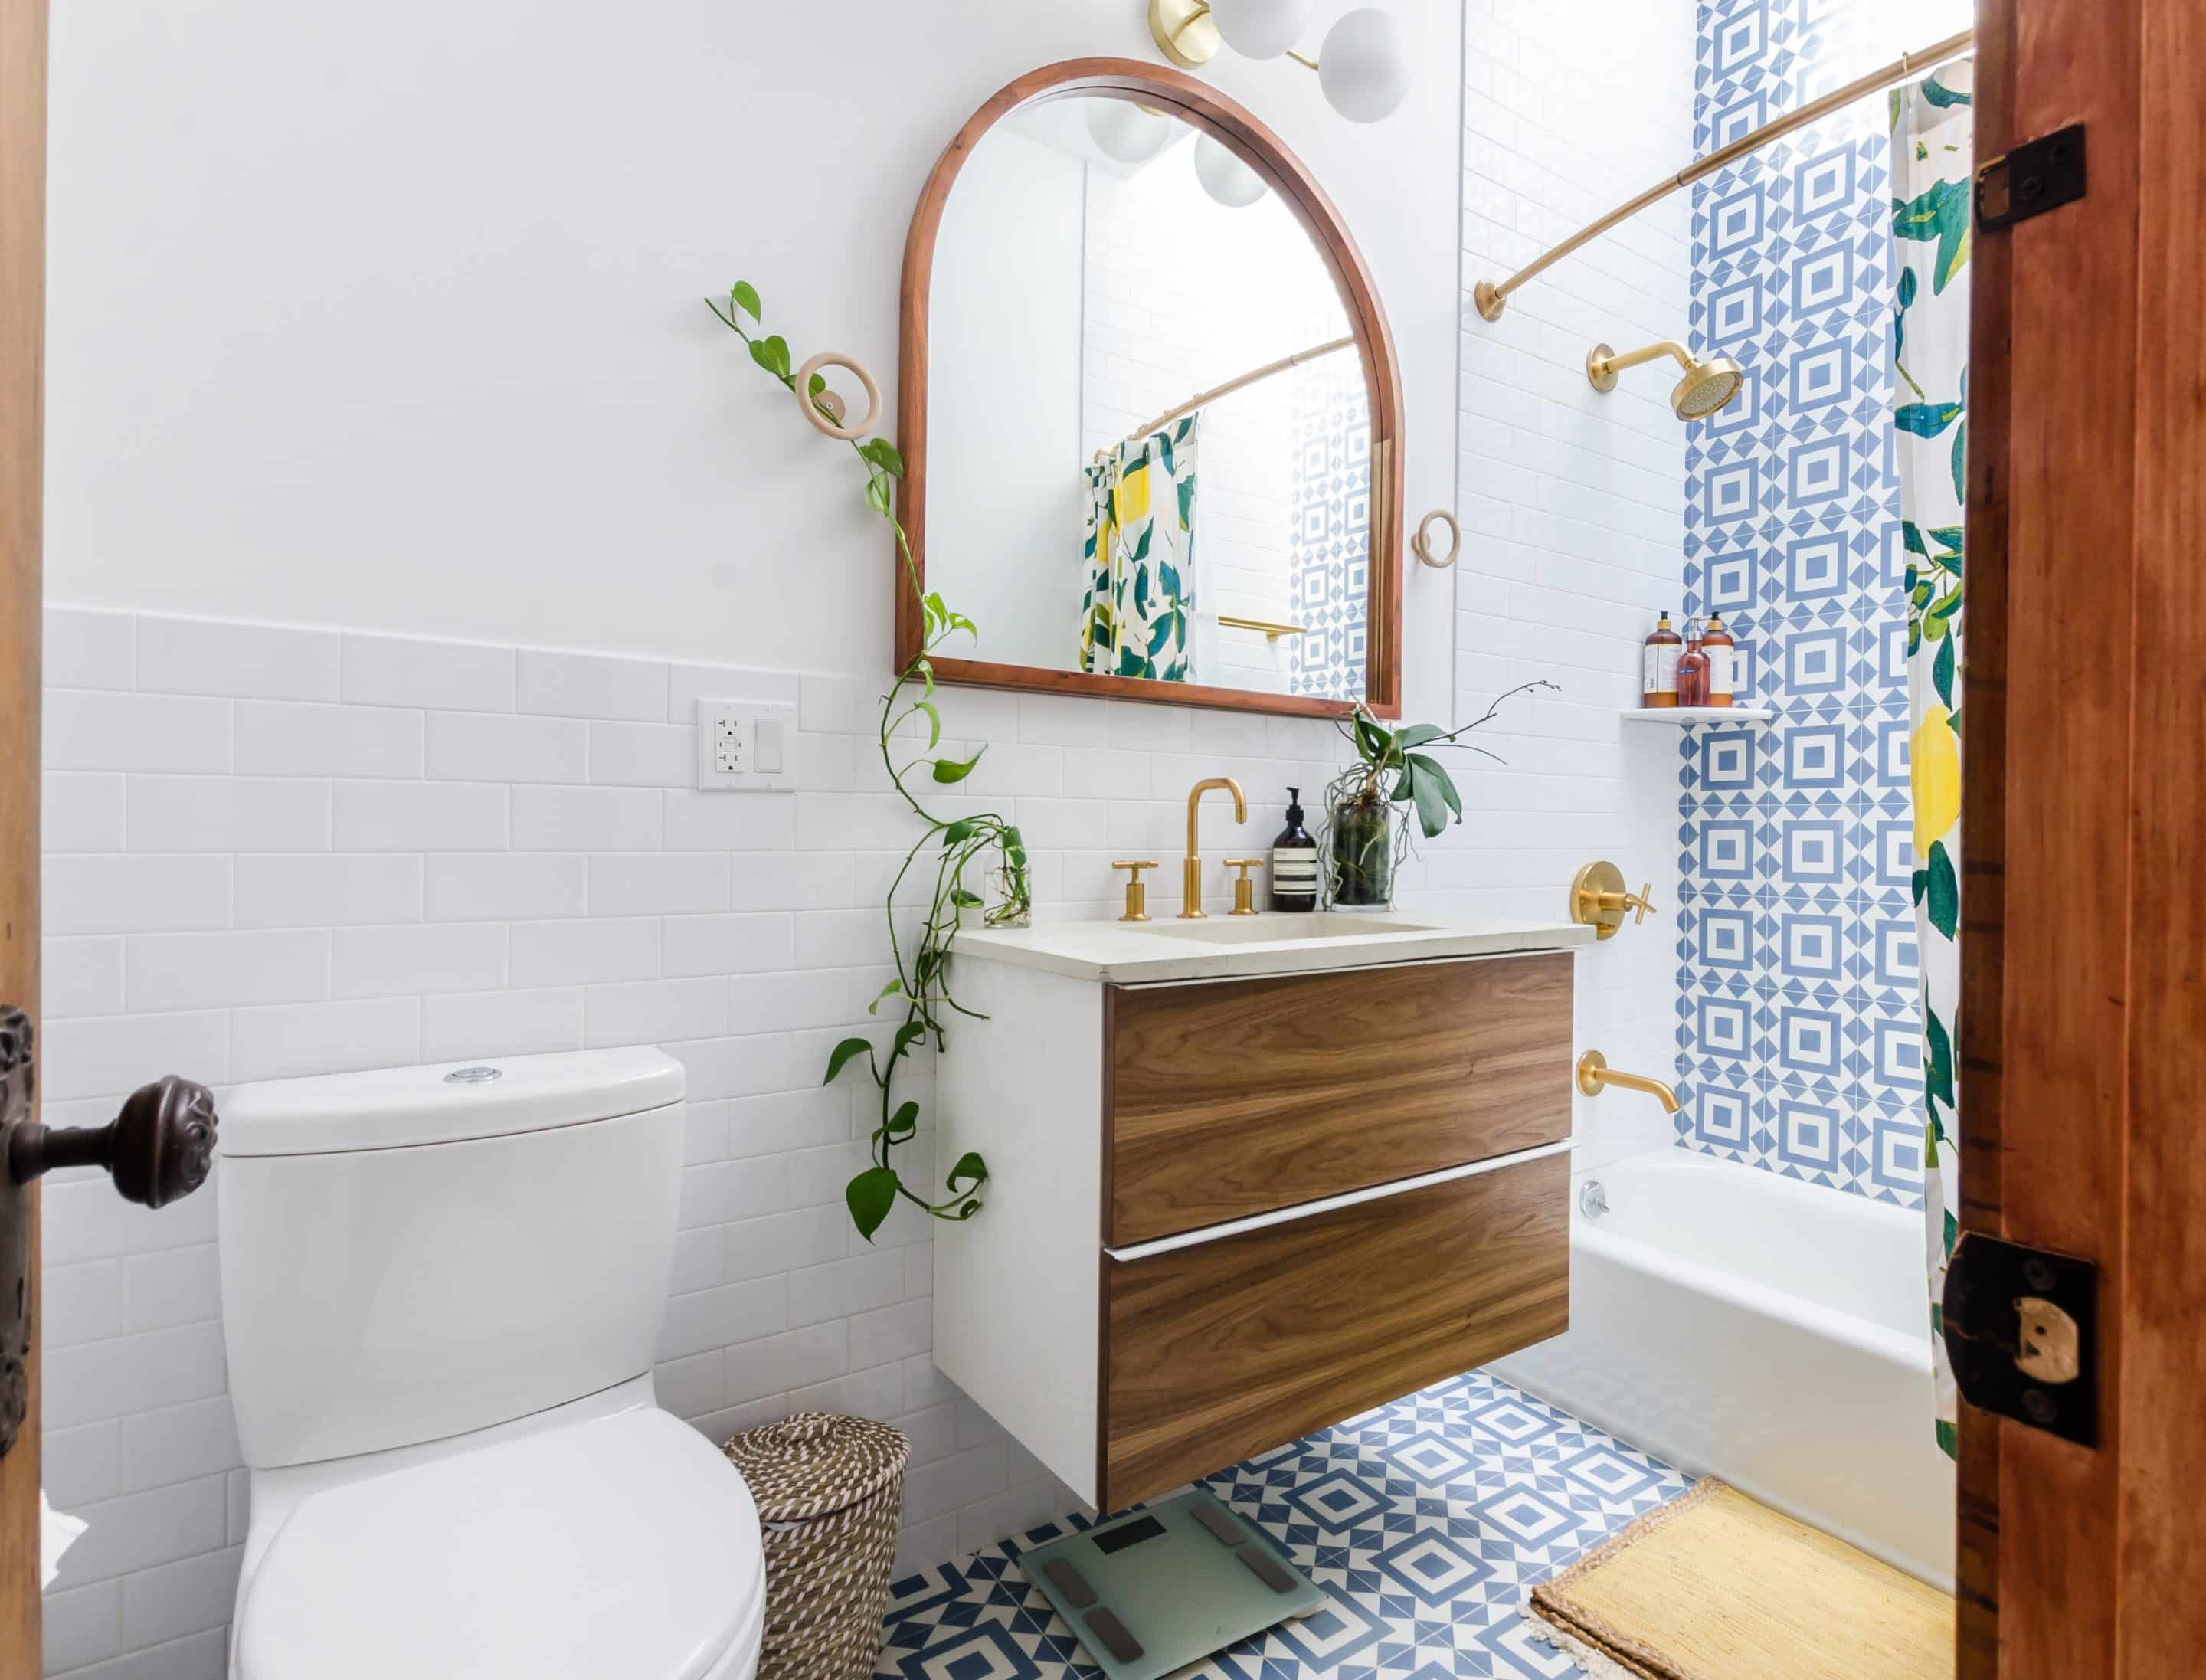 Bathroom Mirror Ideas: 10 Designs To Suit Any Bathroom